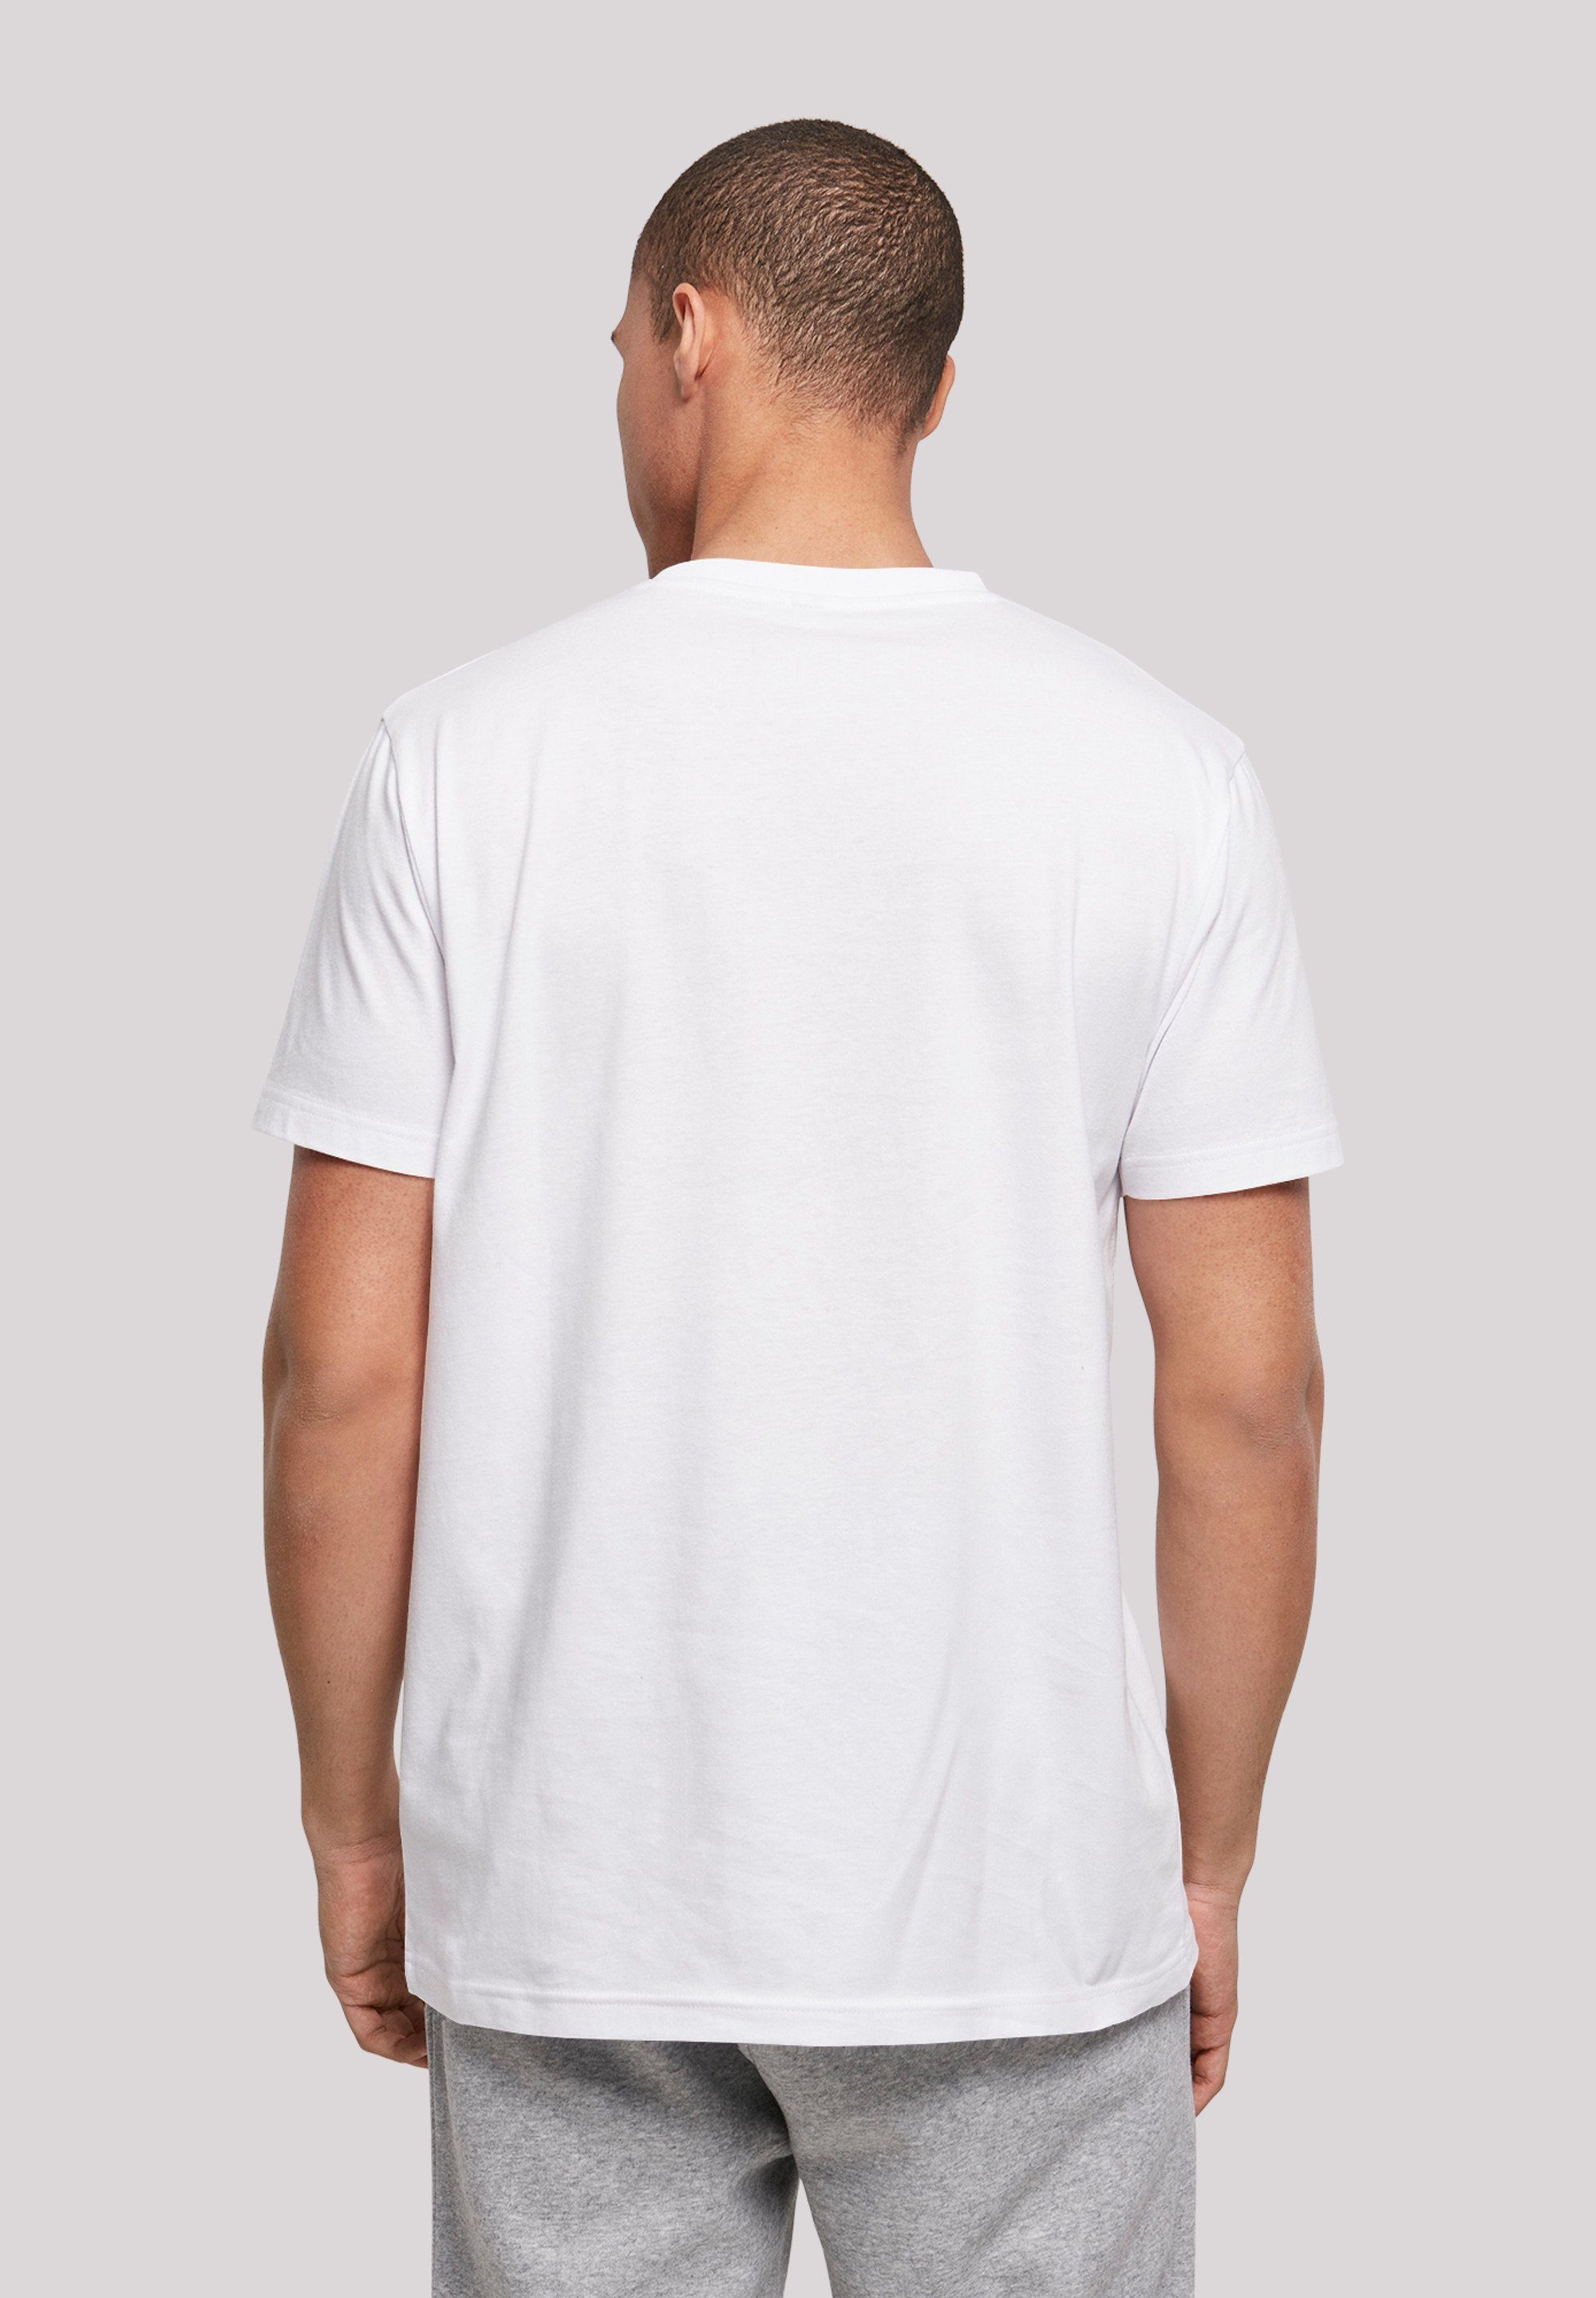 Typo F4NT4STIC Studio Plain Print weiß T-Shirt